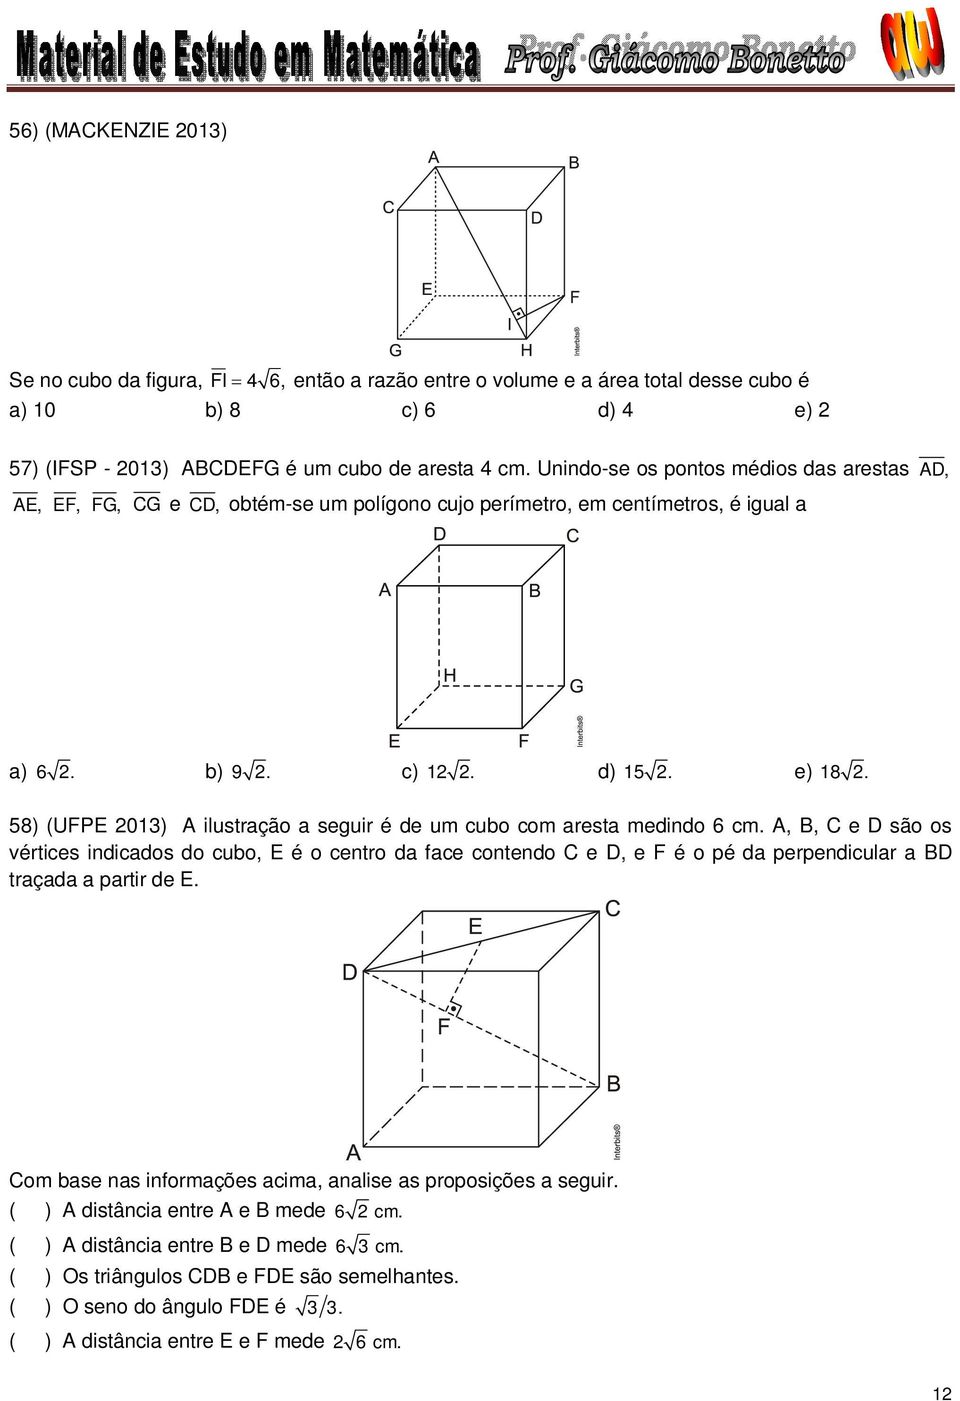 58) (UFPE 01) A ilustração a seguir é de um cubo com aresta medindo 6 cm.